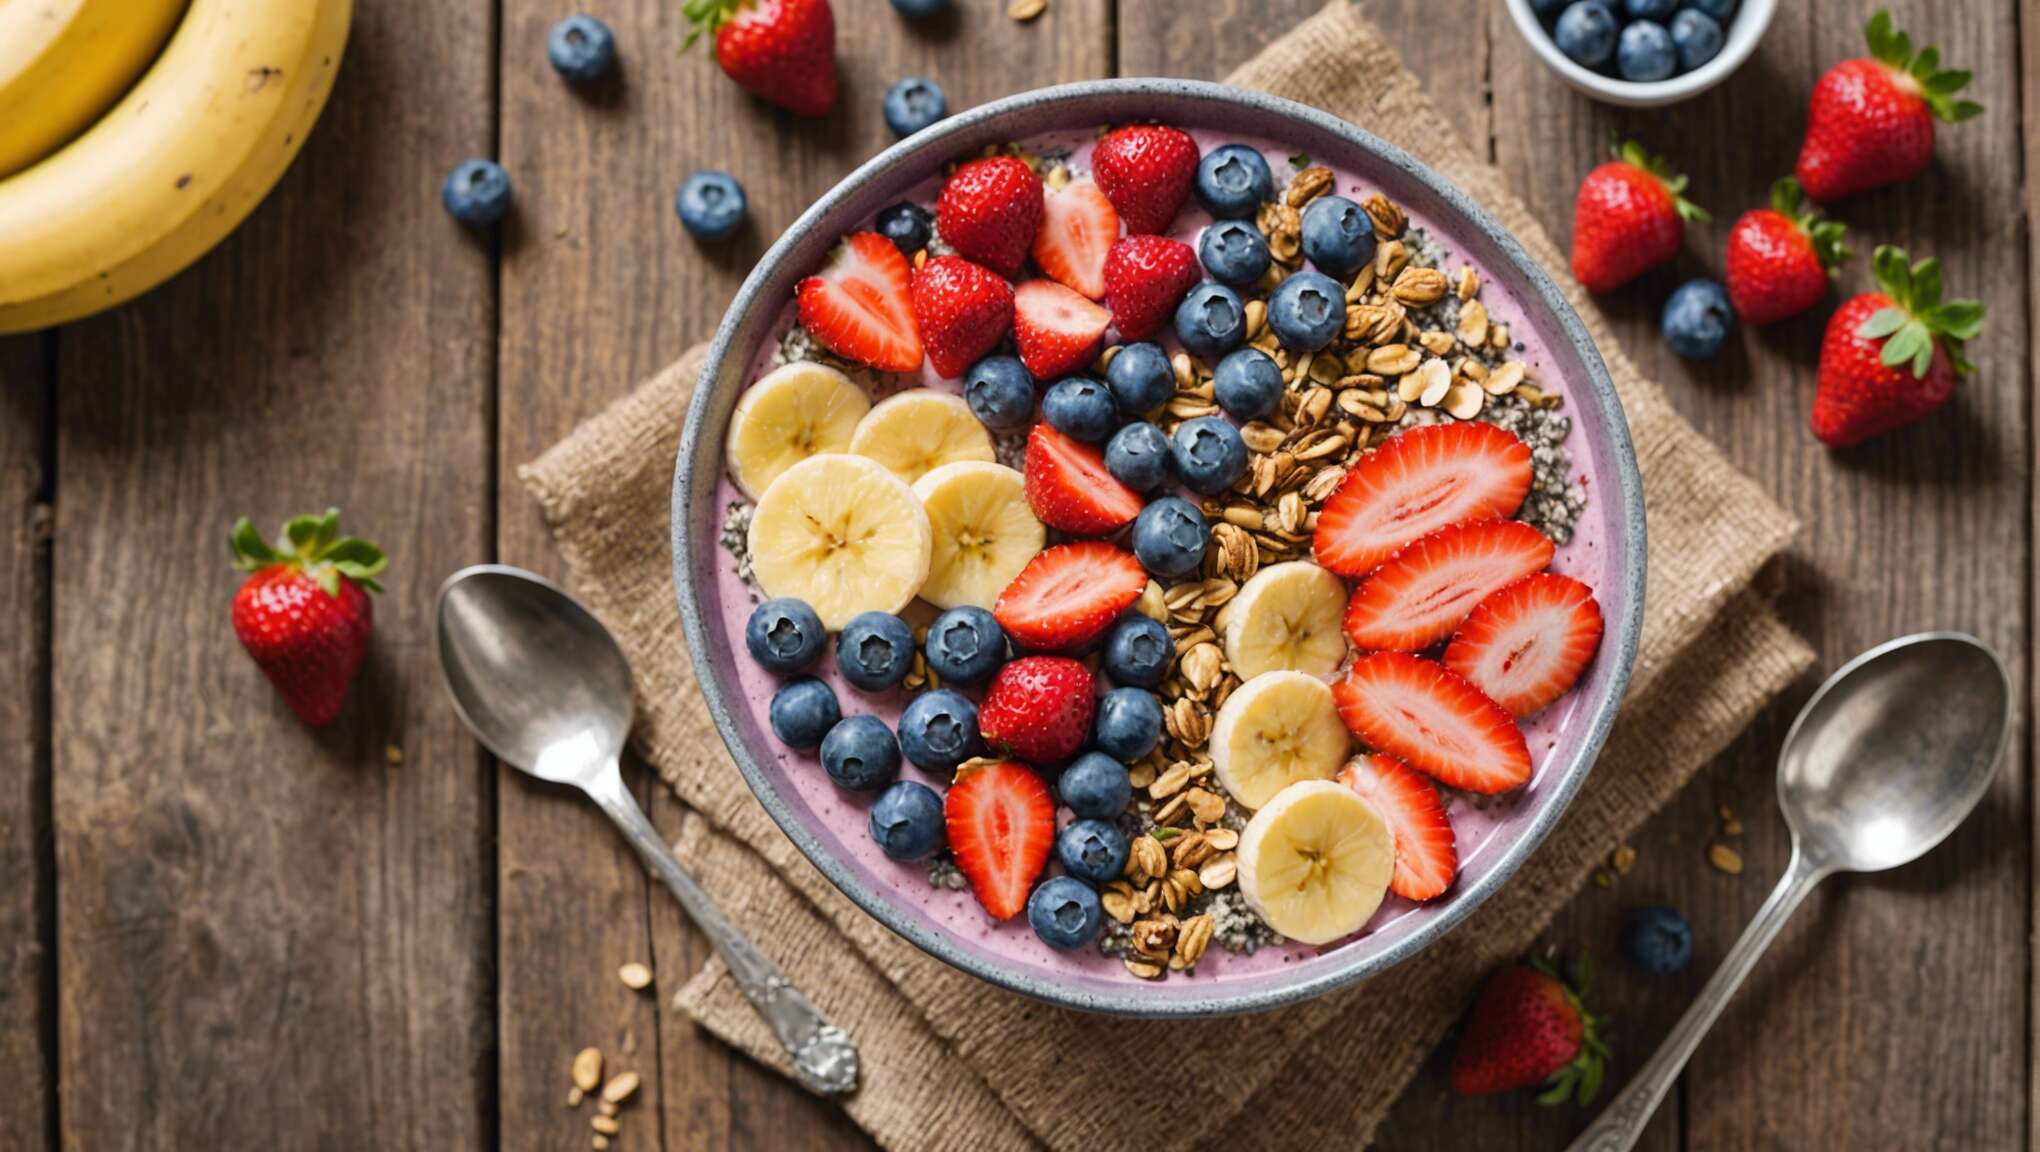 Smoothie bowl : la tendance petit-déjeuner gourmande et saine